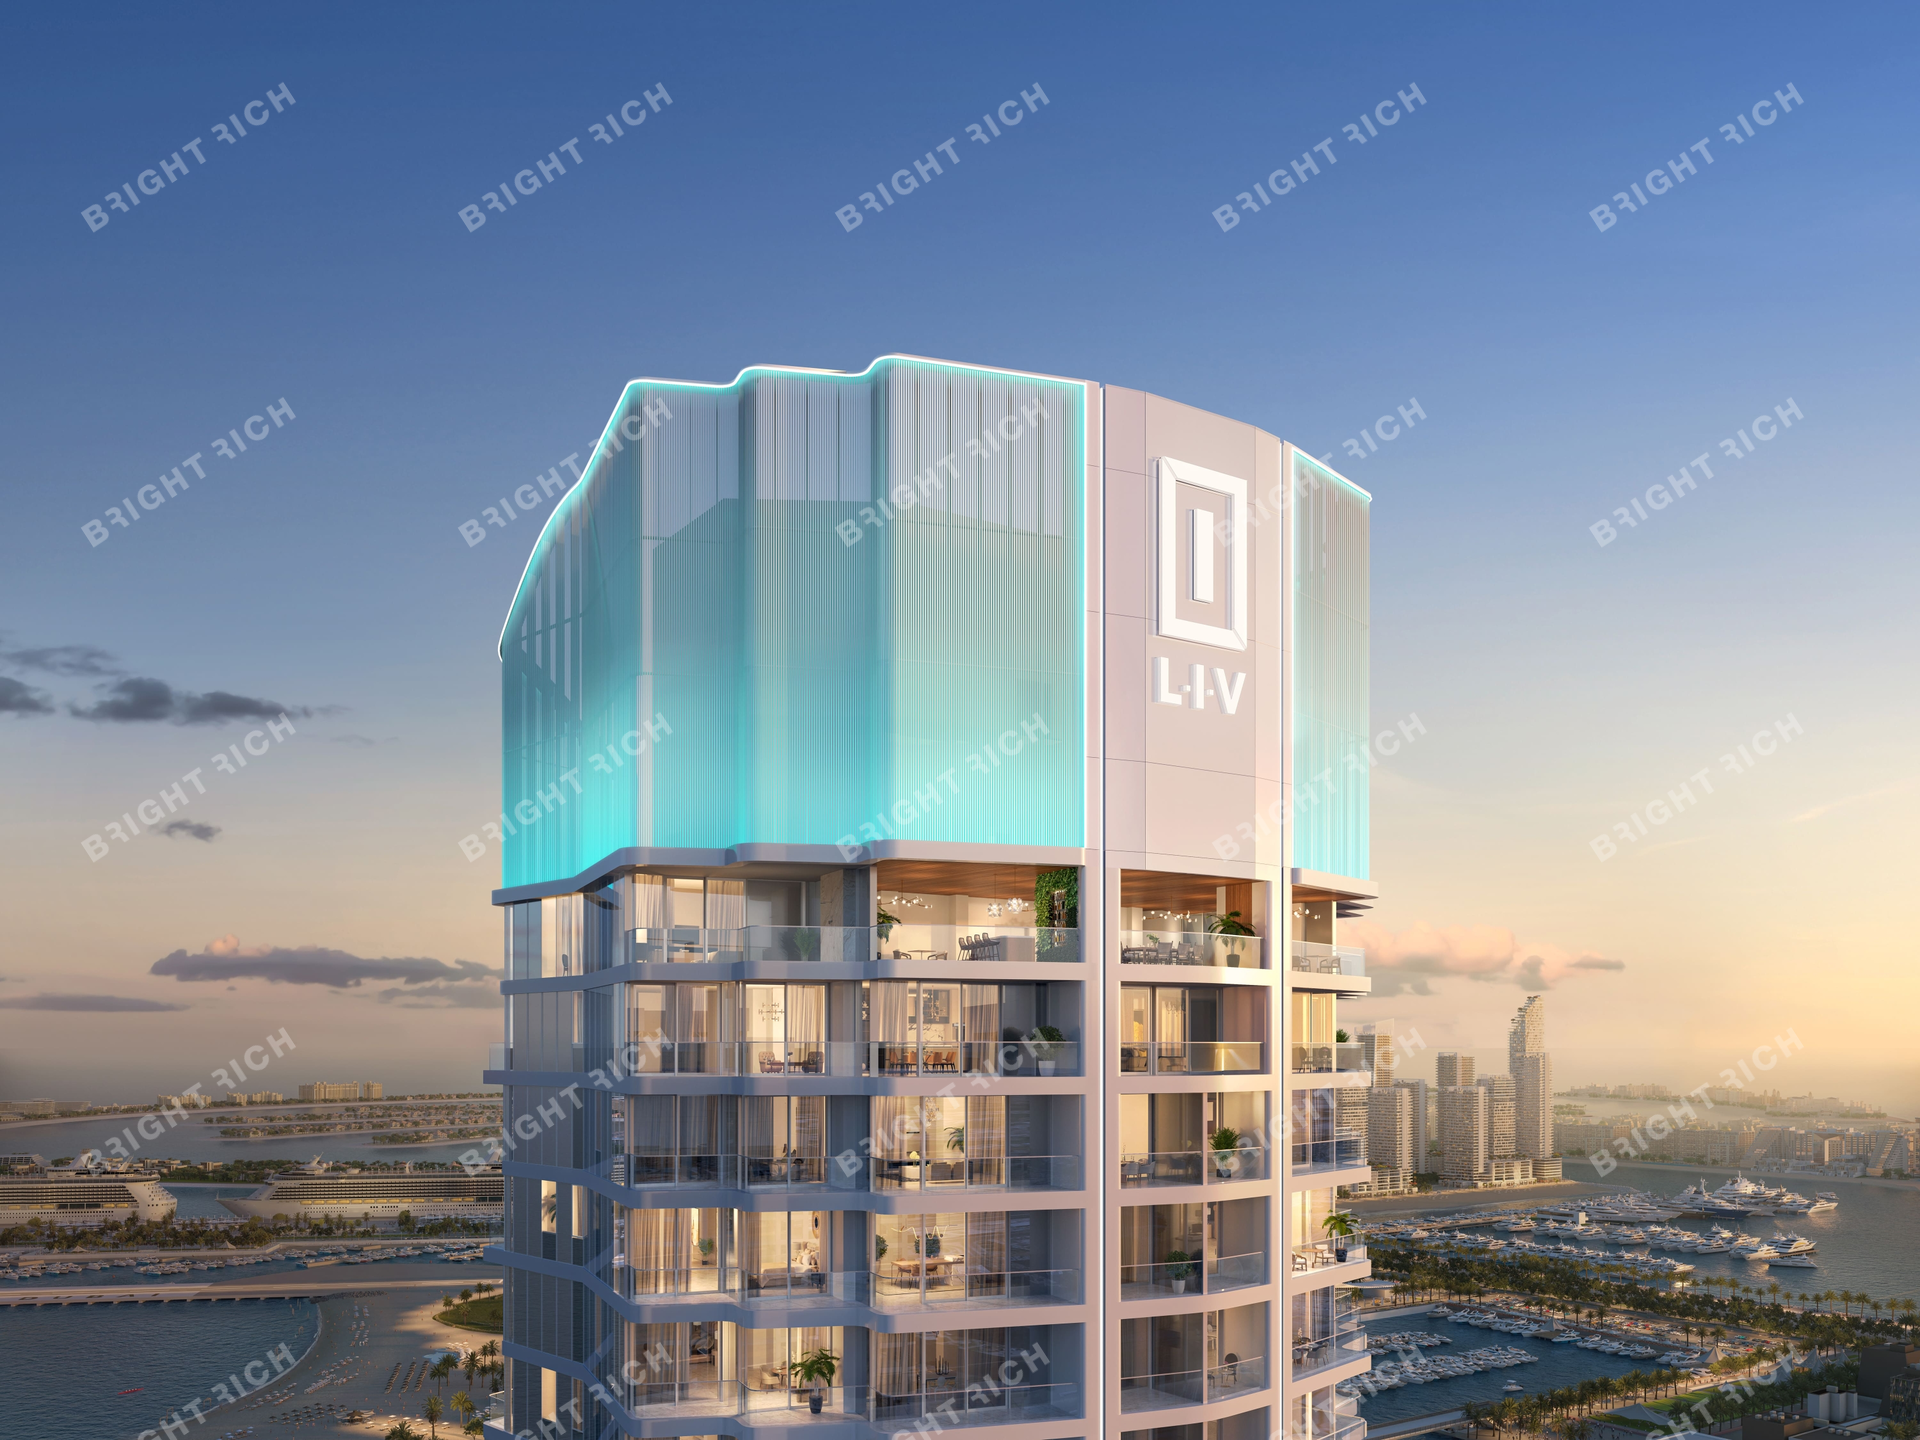 Liv Lux, apart complex in Dubai - 2